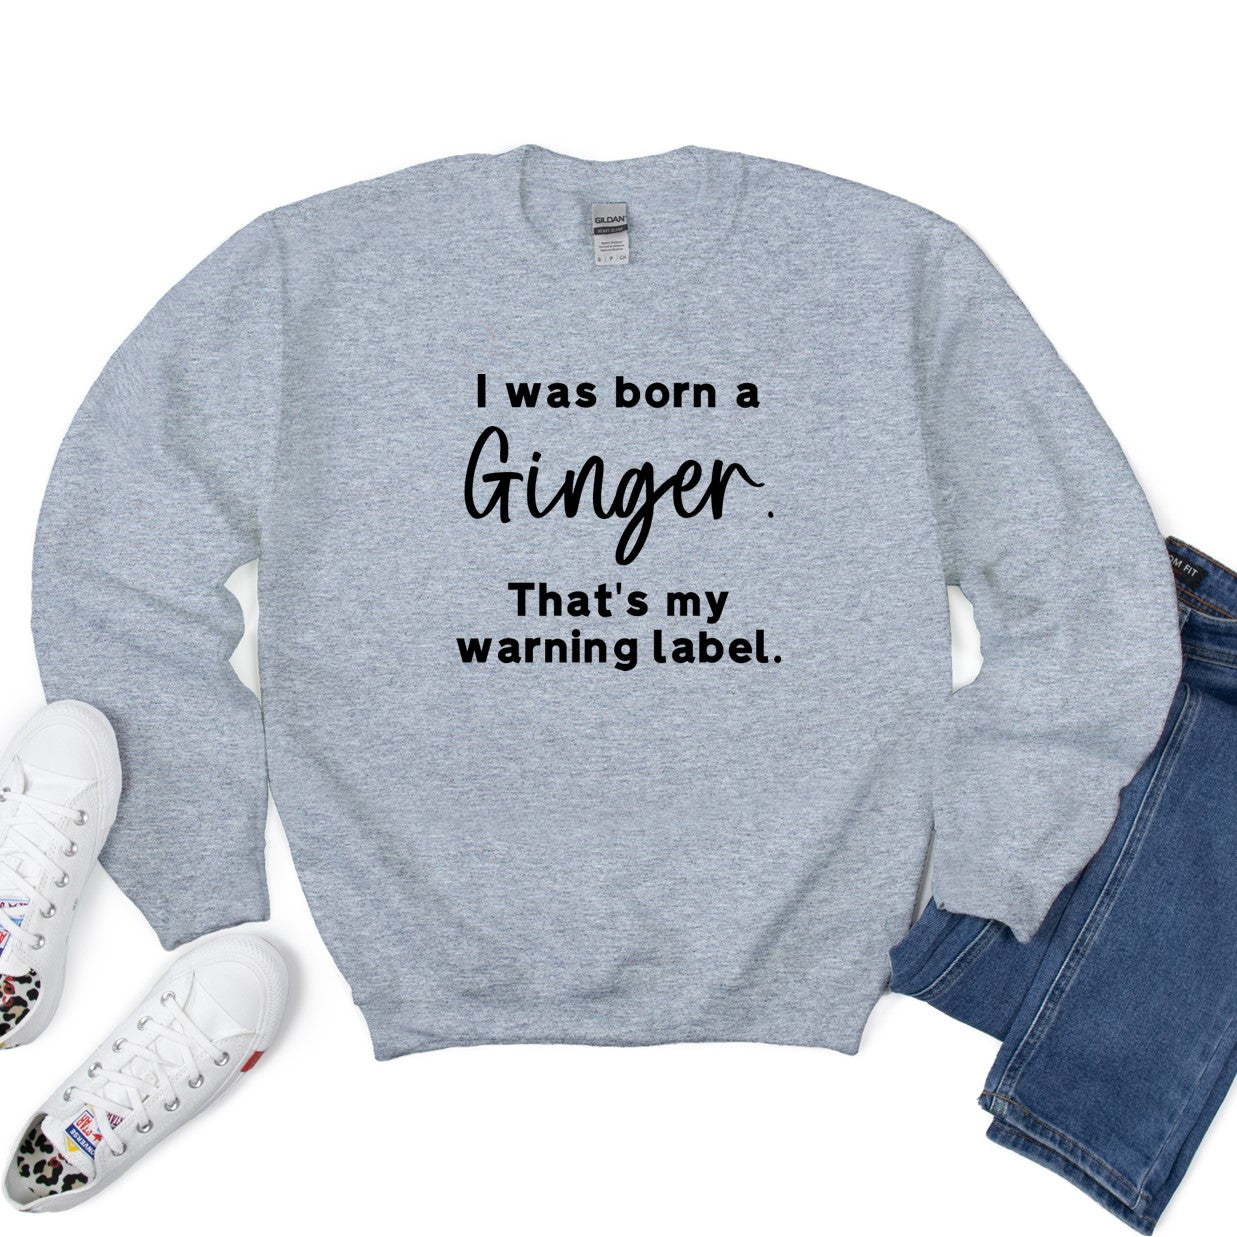 I was born a Ginger - Tee or Sweatshirt